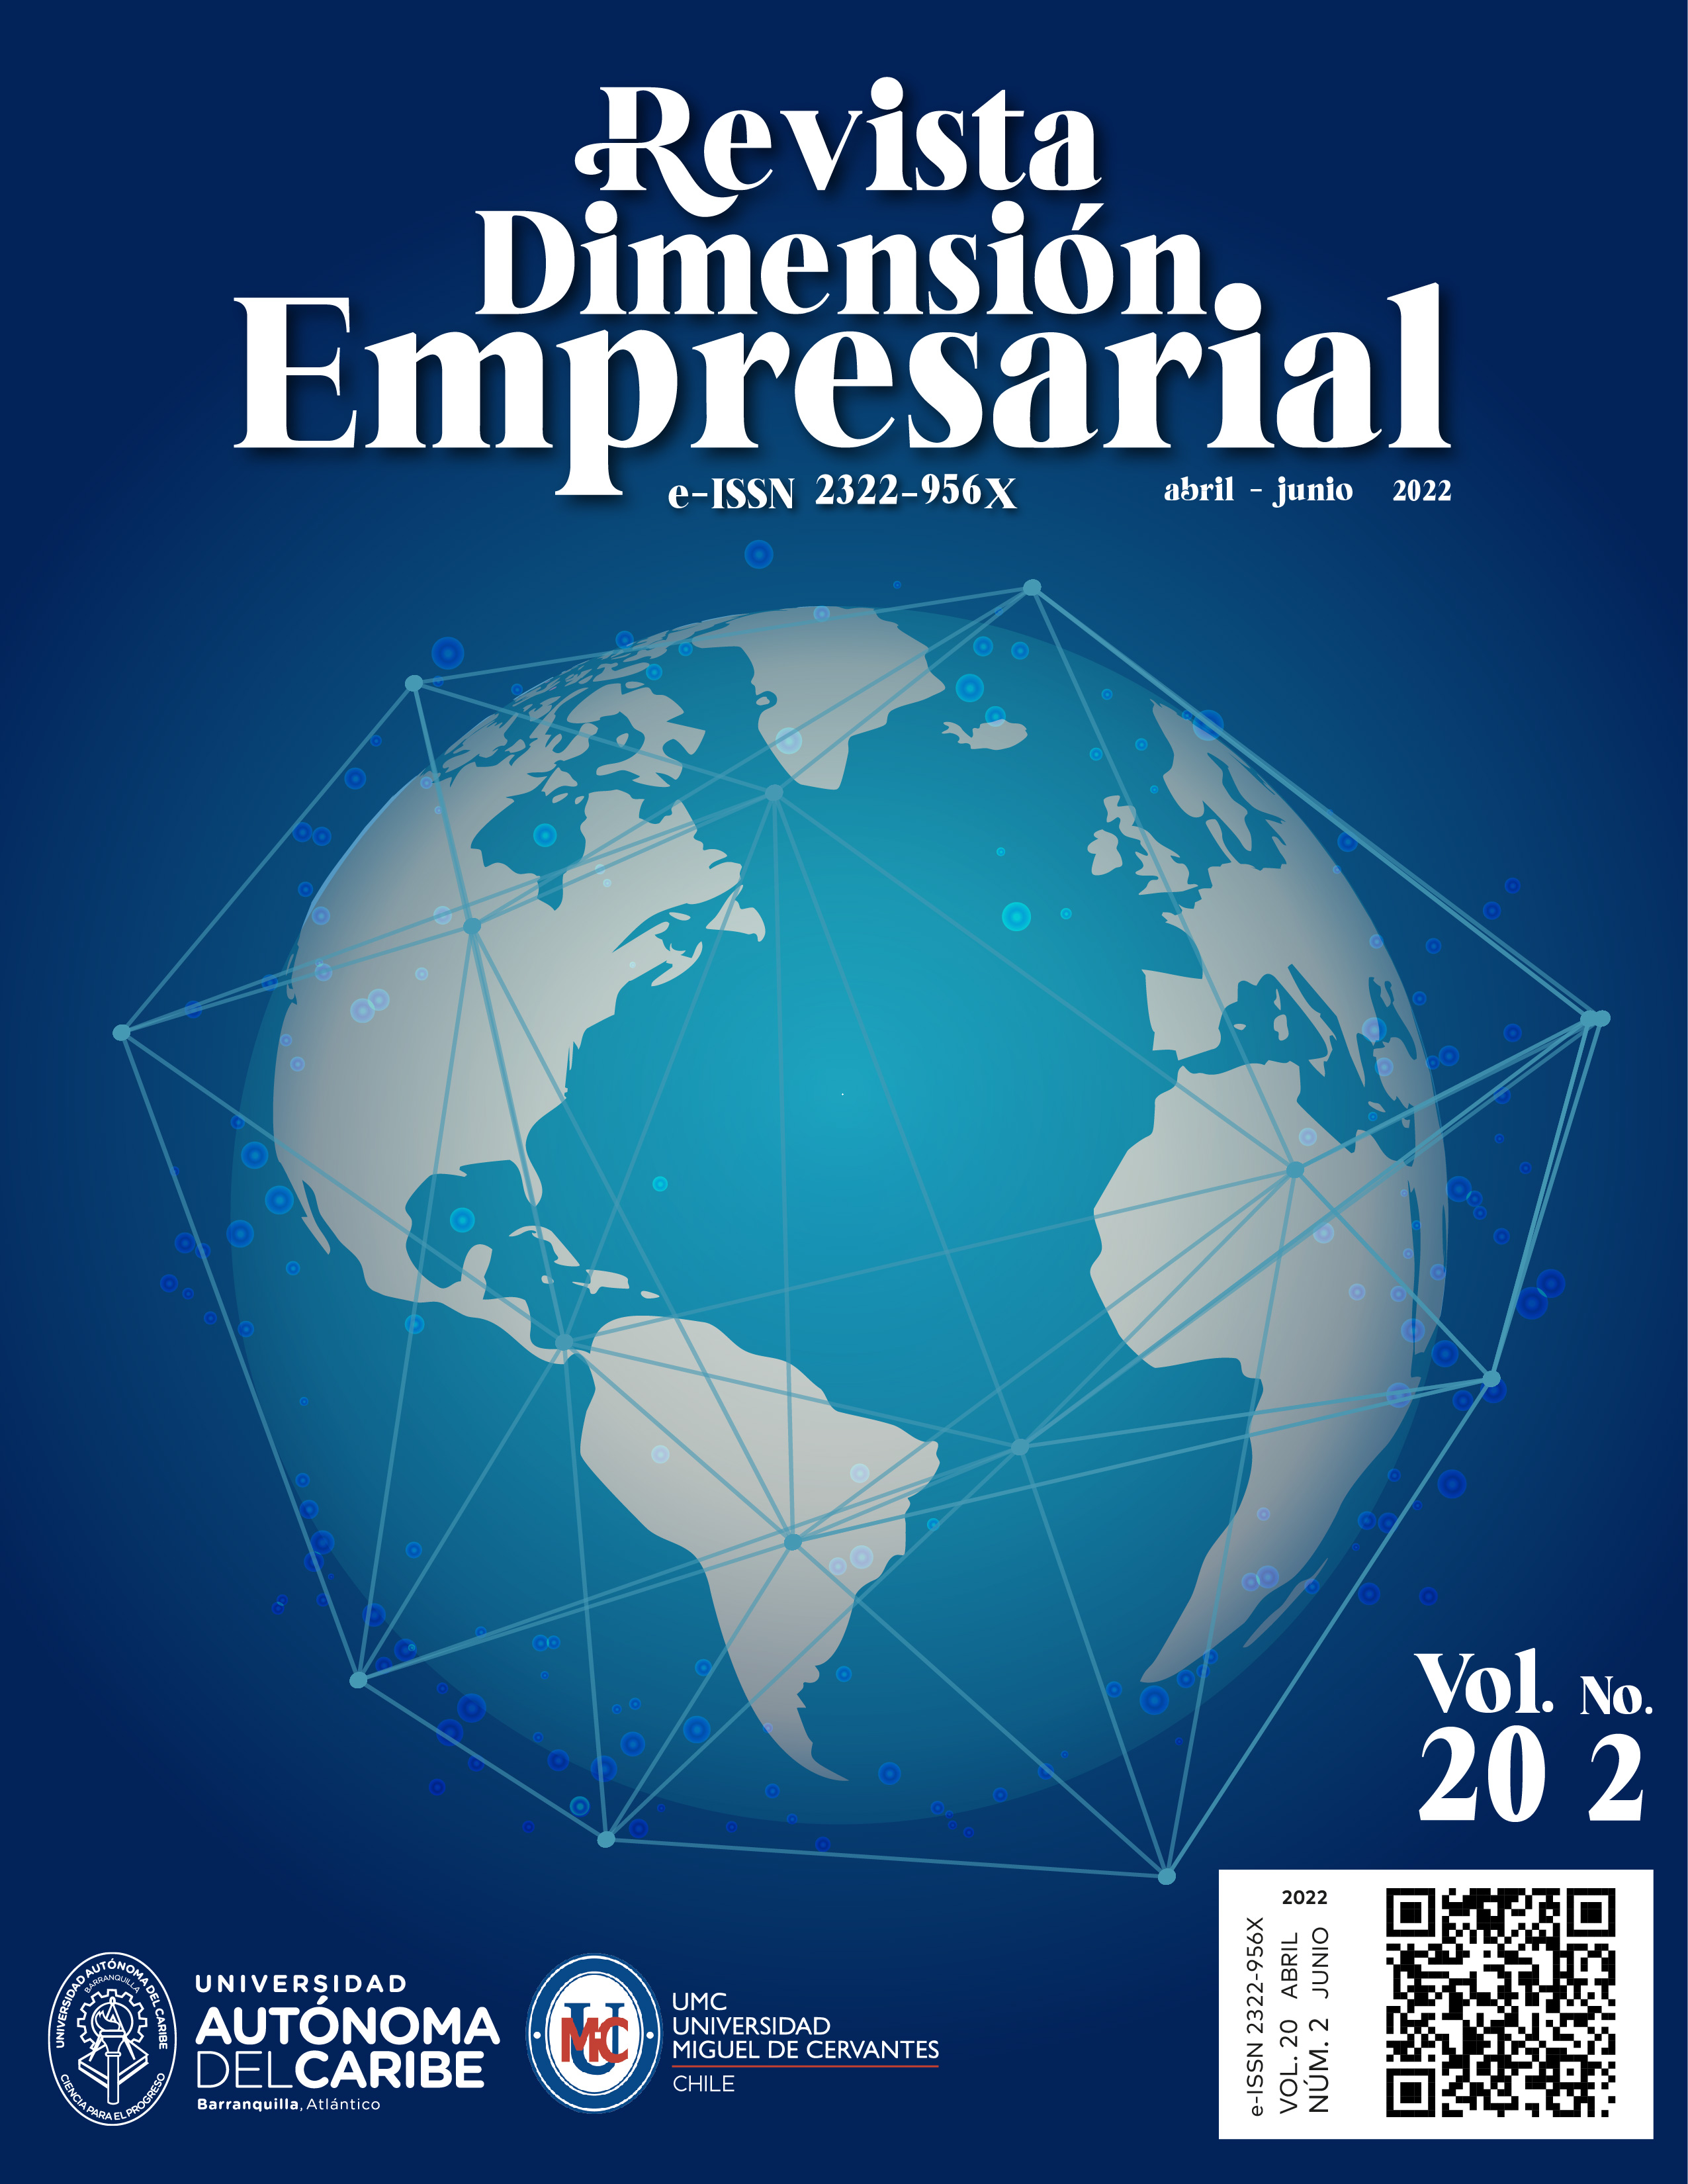 					View Vol. 20 No. 2 (2022): Revista Dimensión Empresarial
				